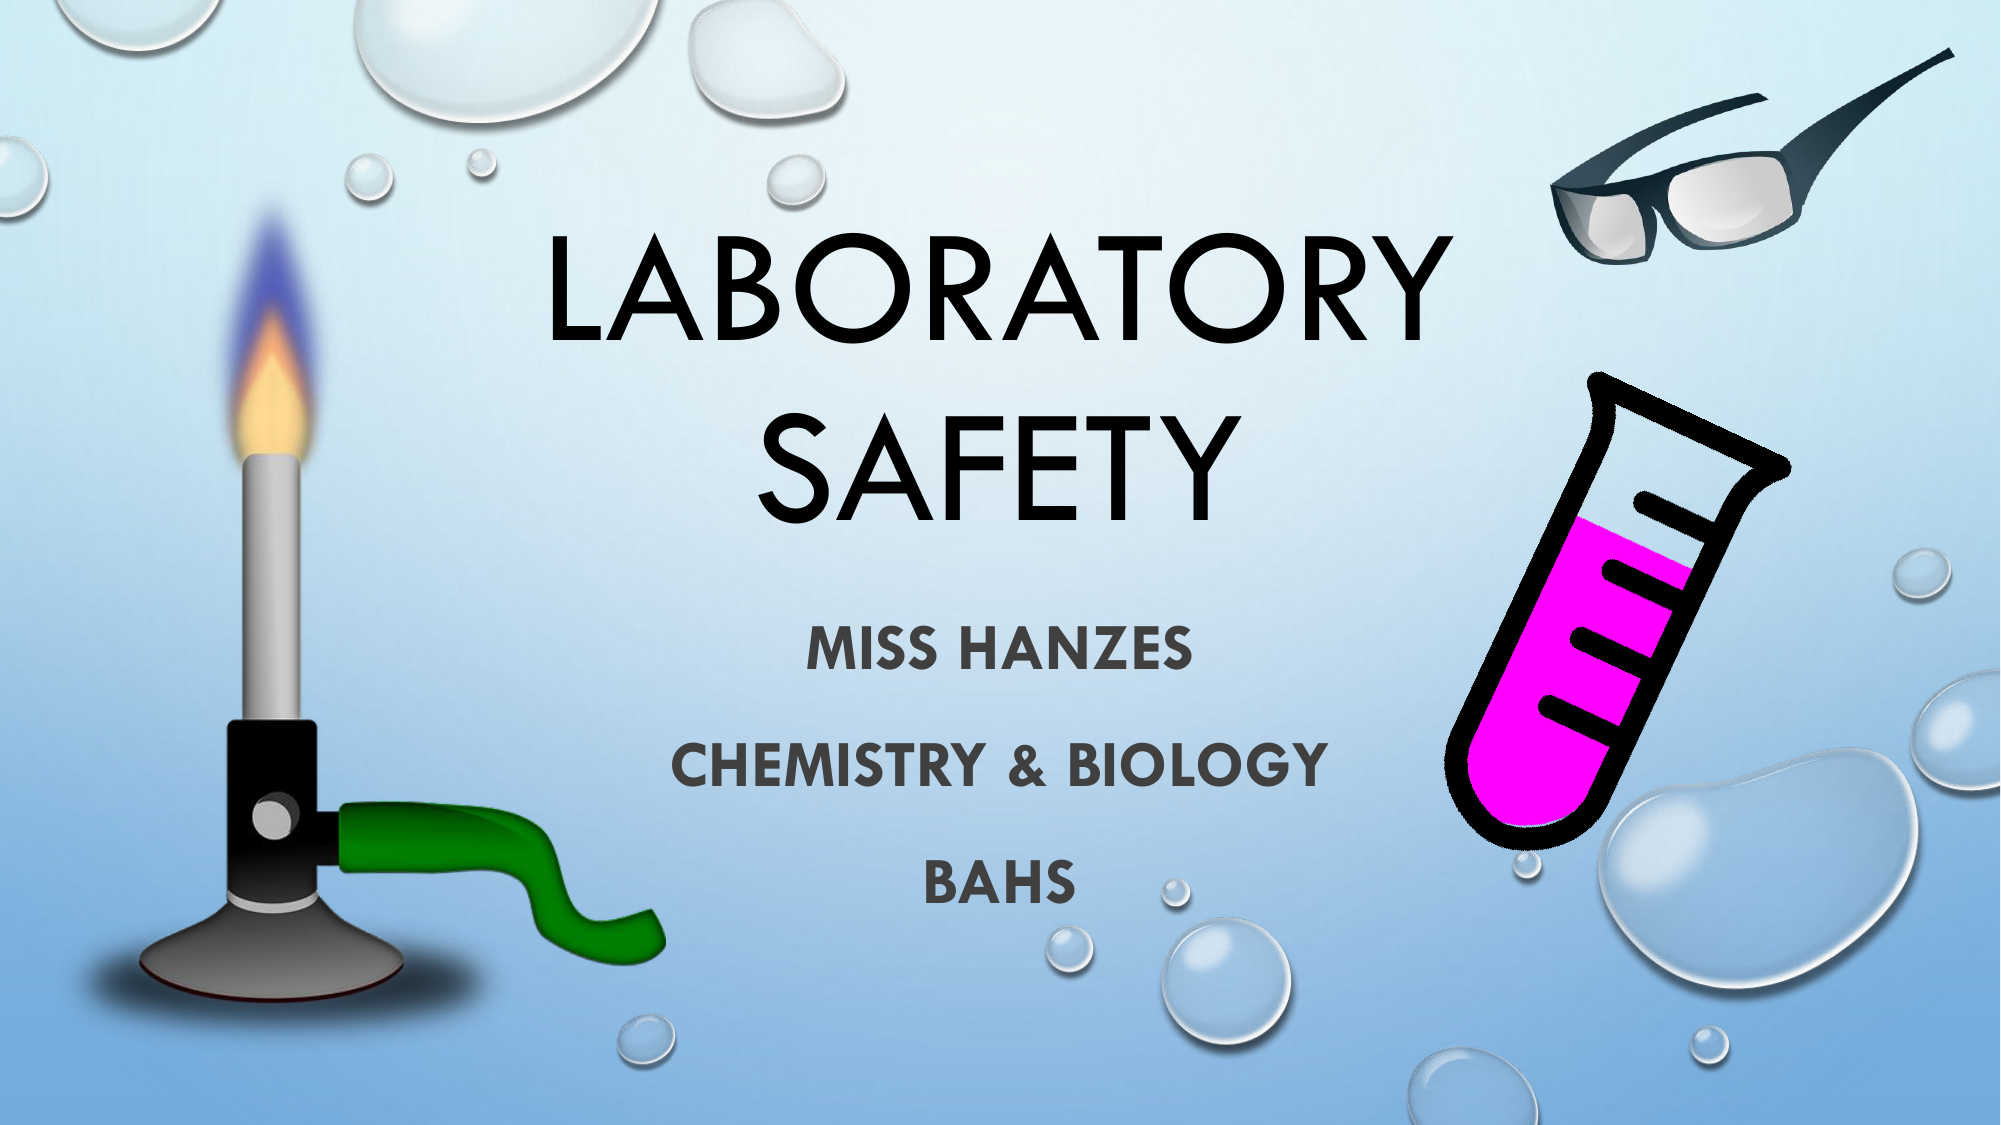 lab safety ppt presentation download